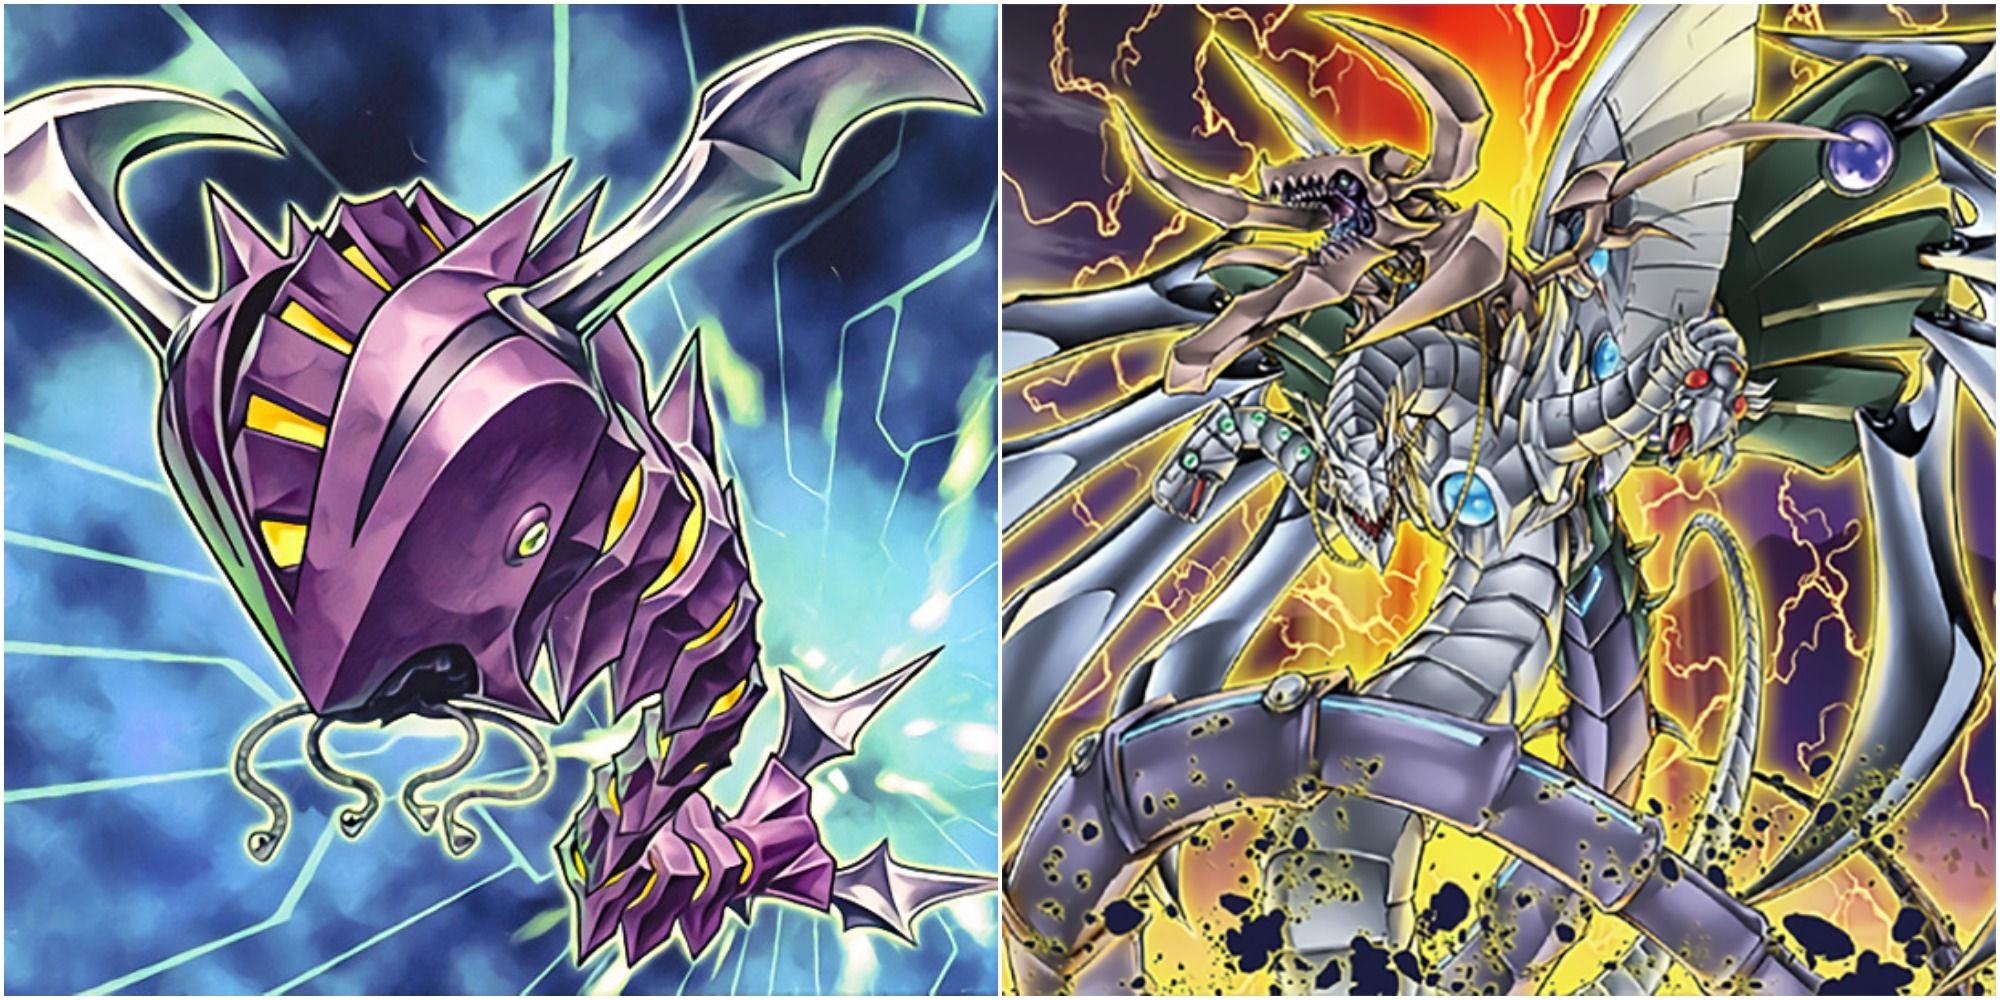 yugioh Cyberdark Cannon and Cyberdark End Dragon card artworks